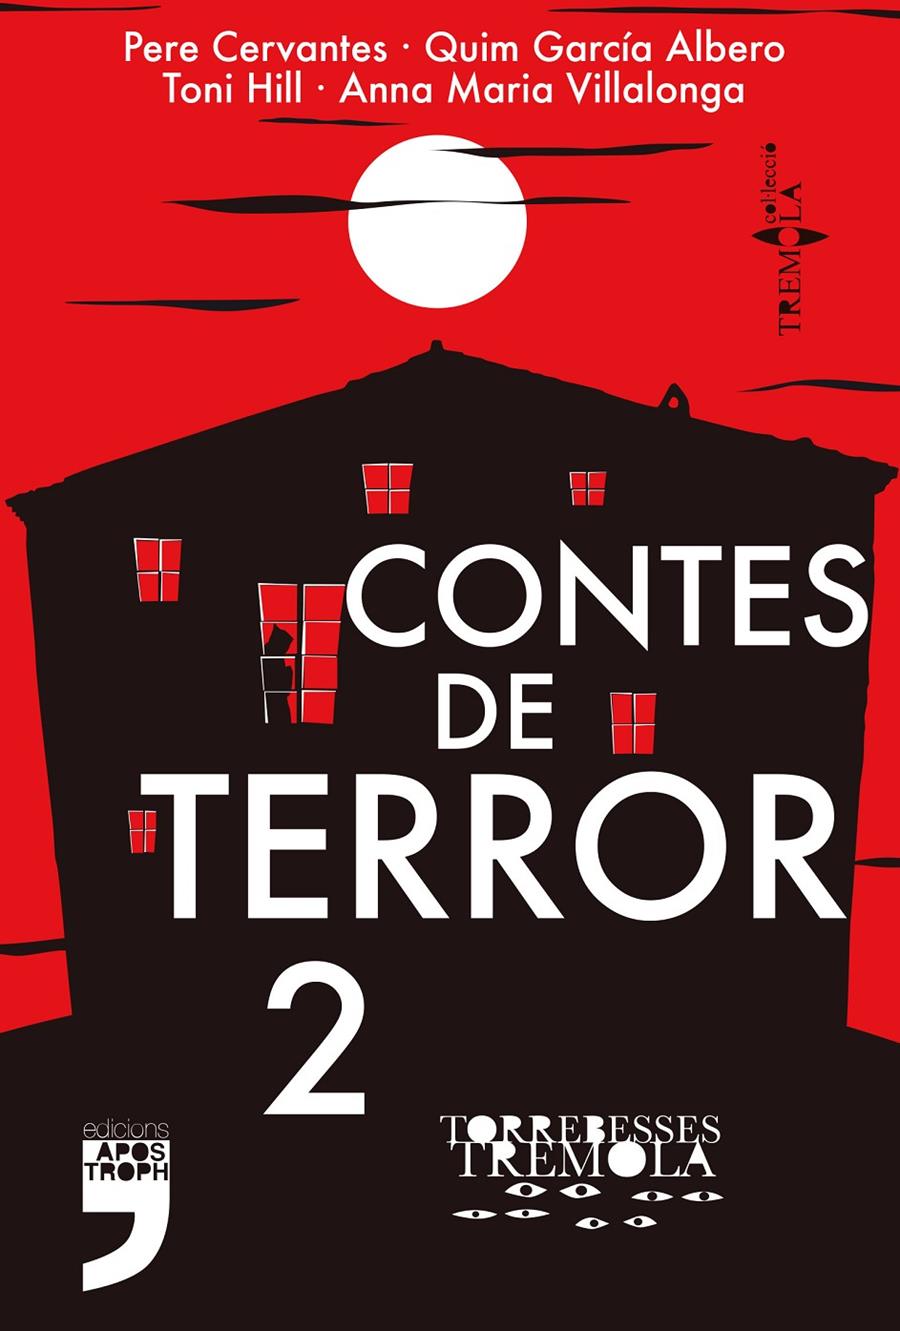 Contes de terror 2 | Cervantes, Pere/García Albero, Quim/Hill, Toni/Villalonga Fernández, Anna Maria | Cooperativa autogestionària